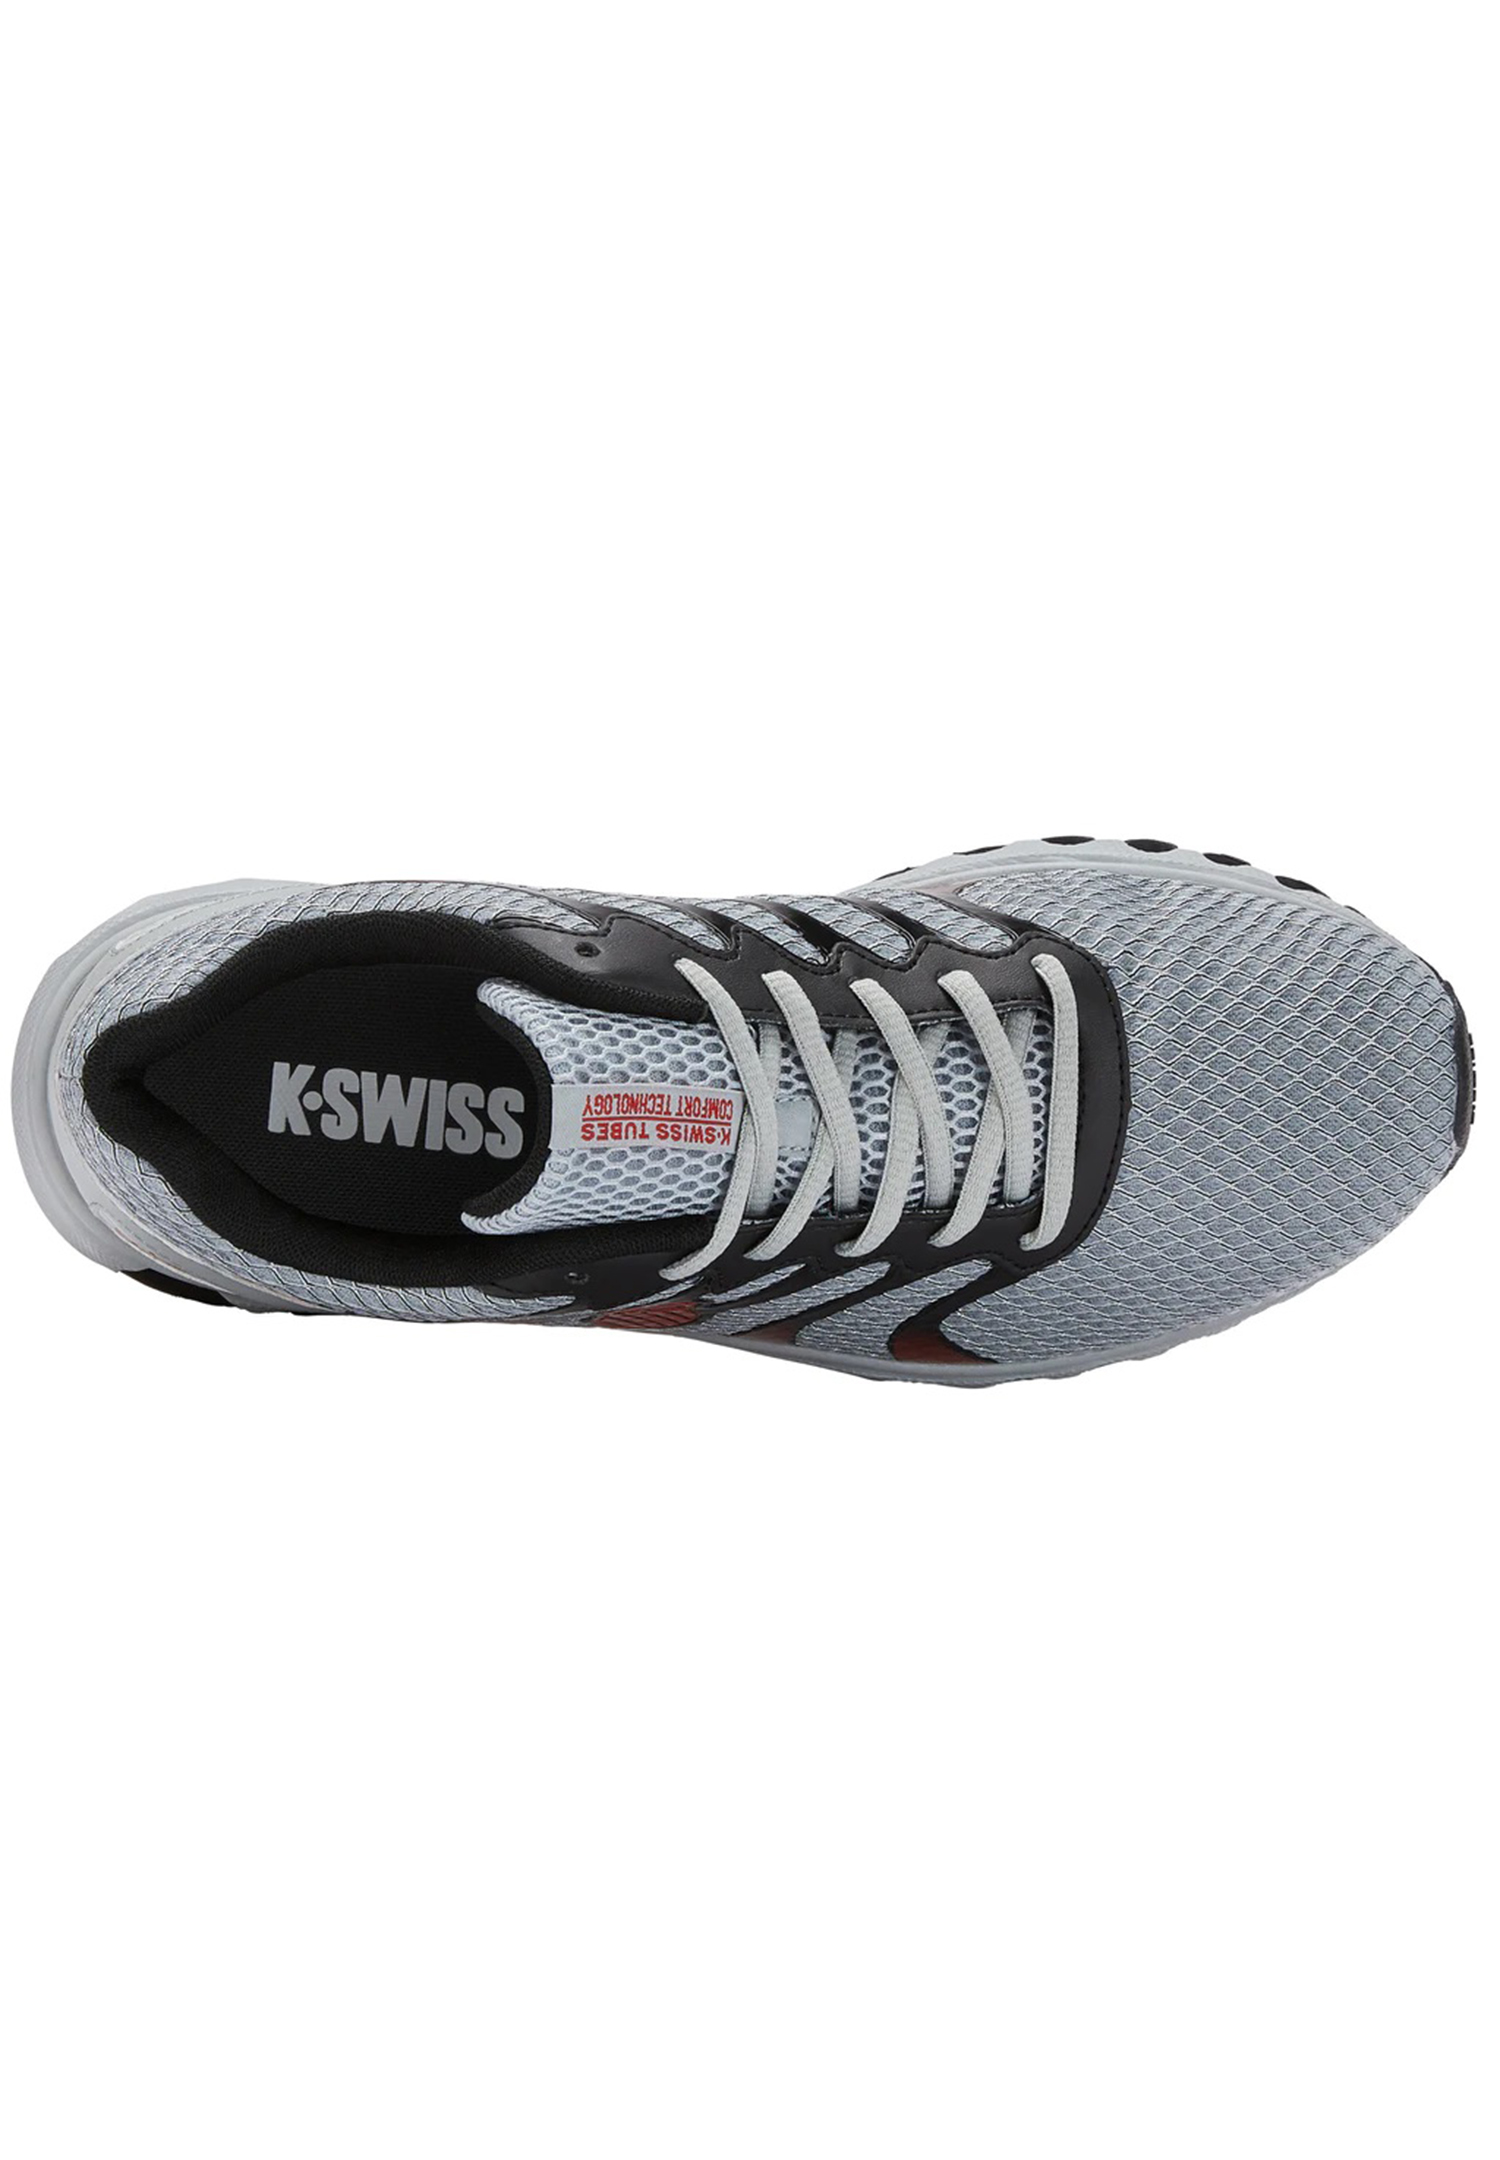 K-SWISS TUBES Comfort 200 Herren Sneaker Sportschuh 07112 grau